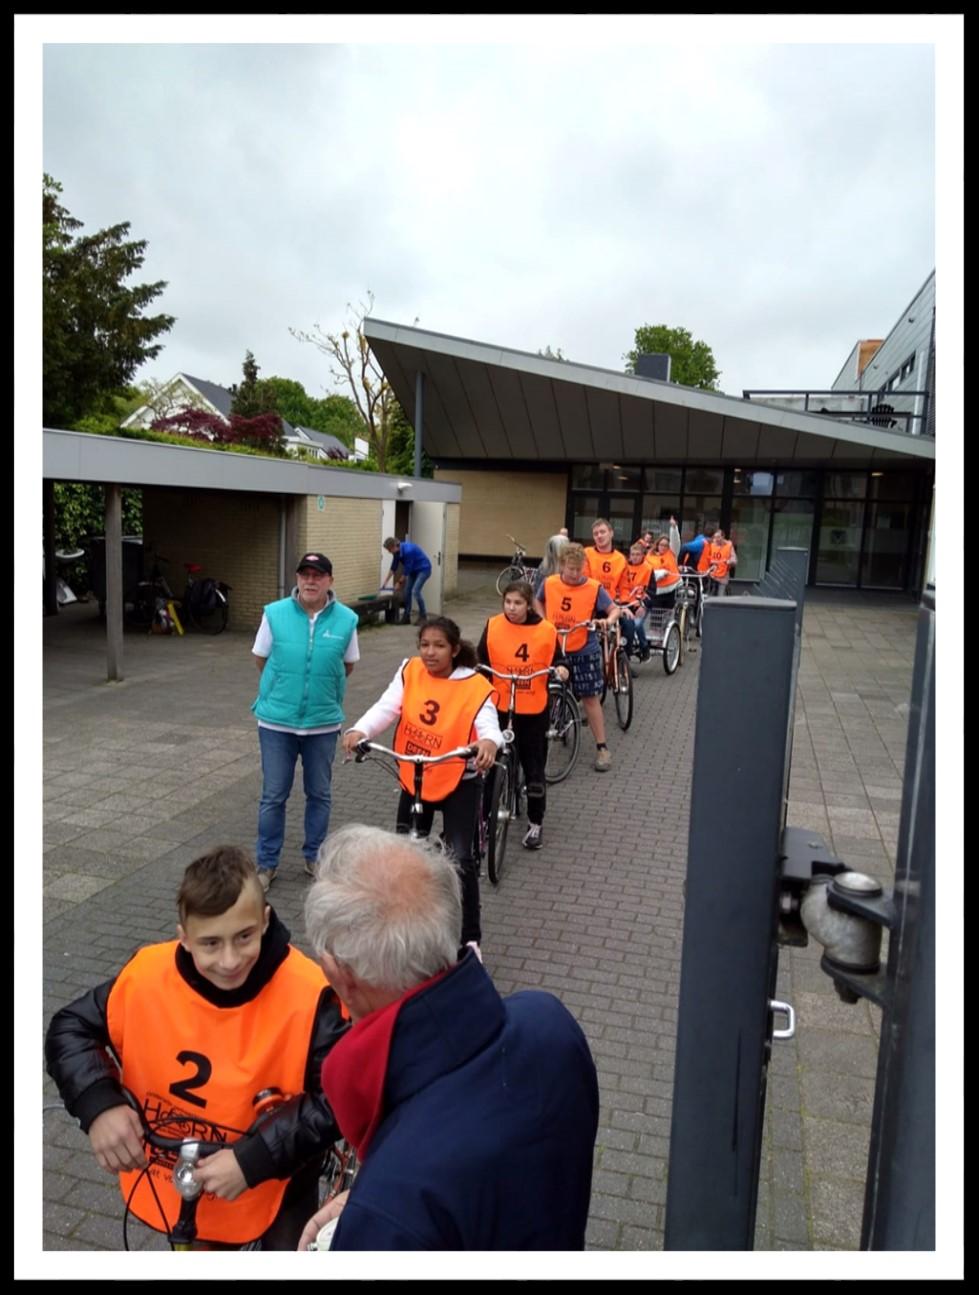 Fietsverkeersexamen 2019 Vrijdag 17 mei was voor 13 leerlingen uit de onder- en middenbouw een spannende dag. Op deze dag vond namelijk het praktisch fietsverkeersexamen plaats waaraan zij deelnamen.